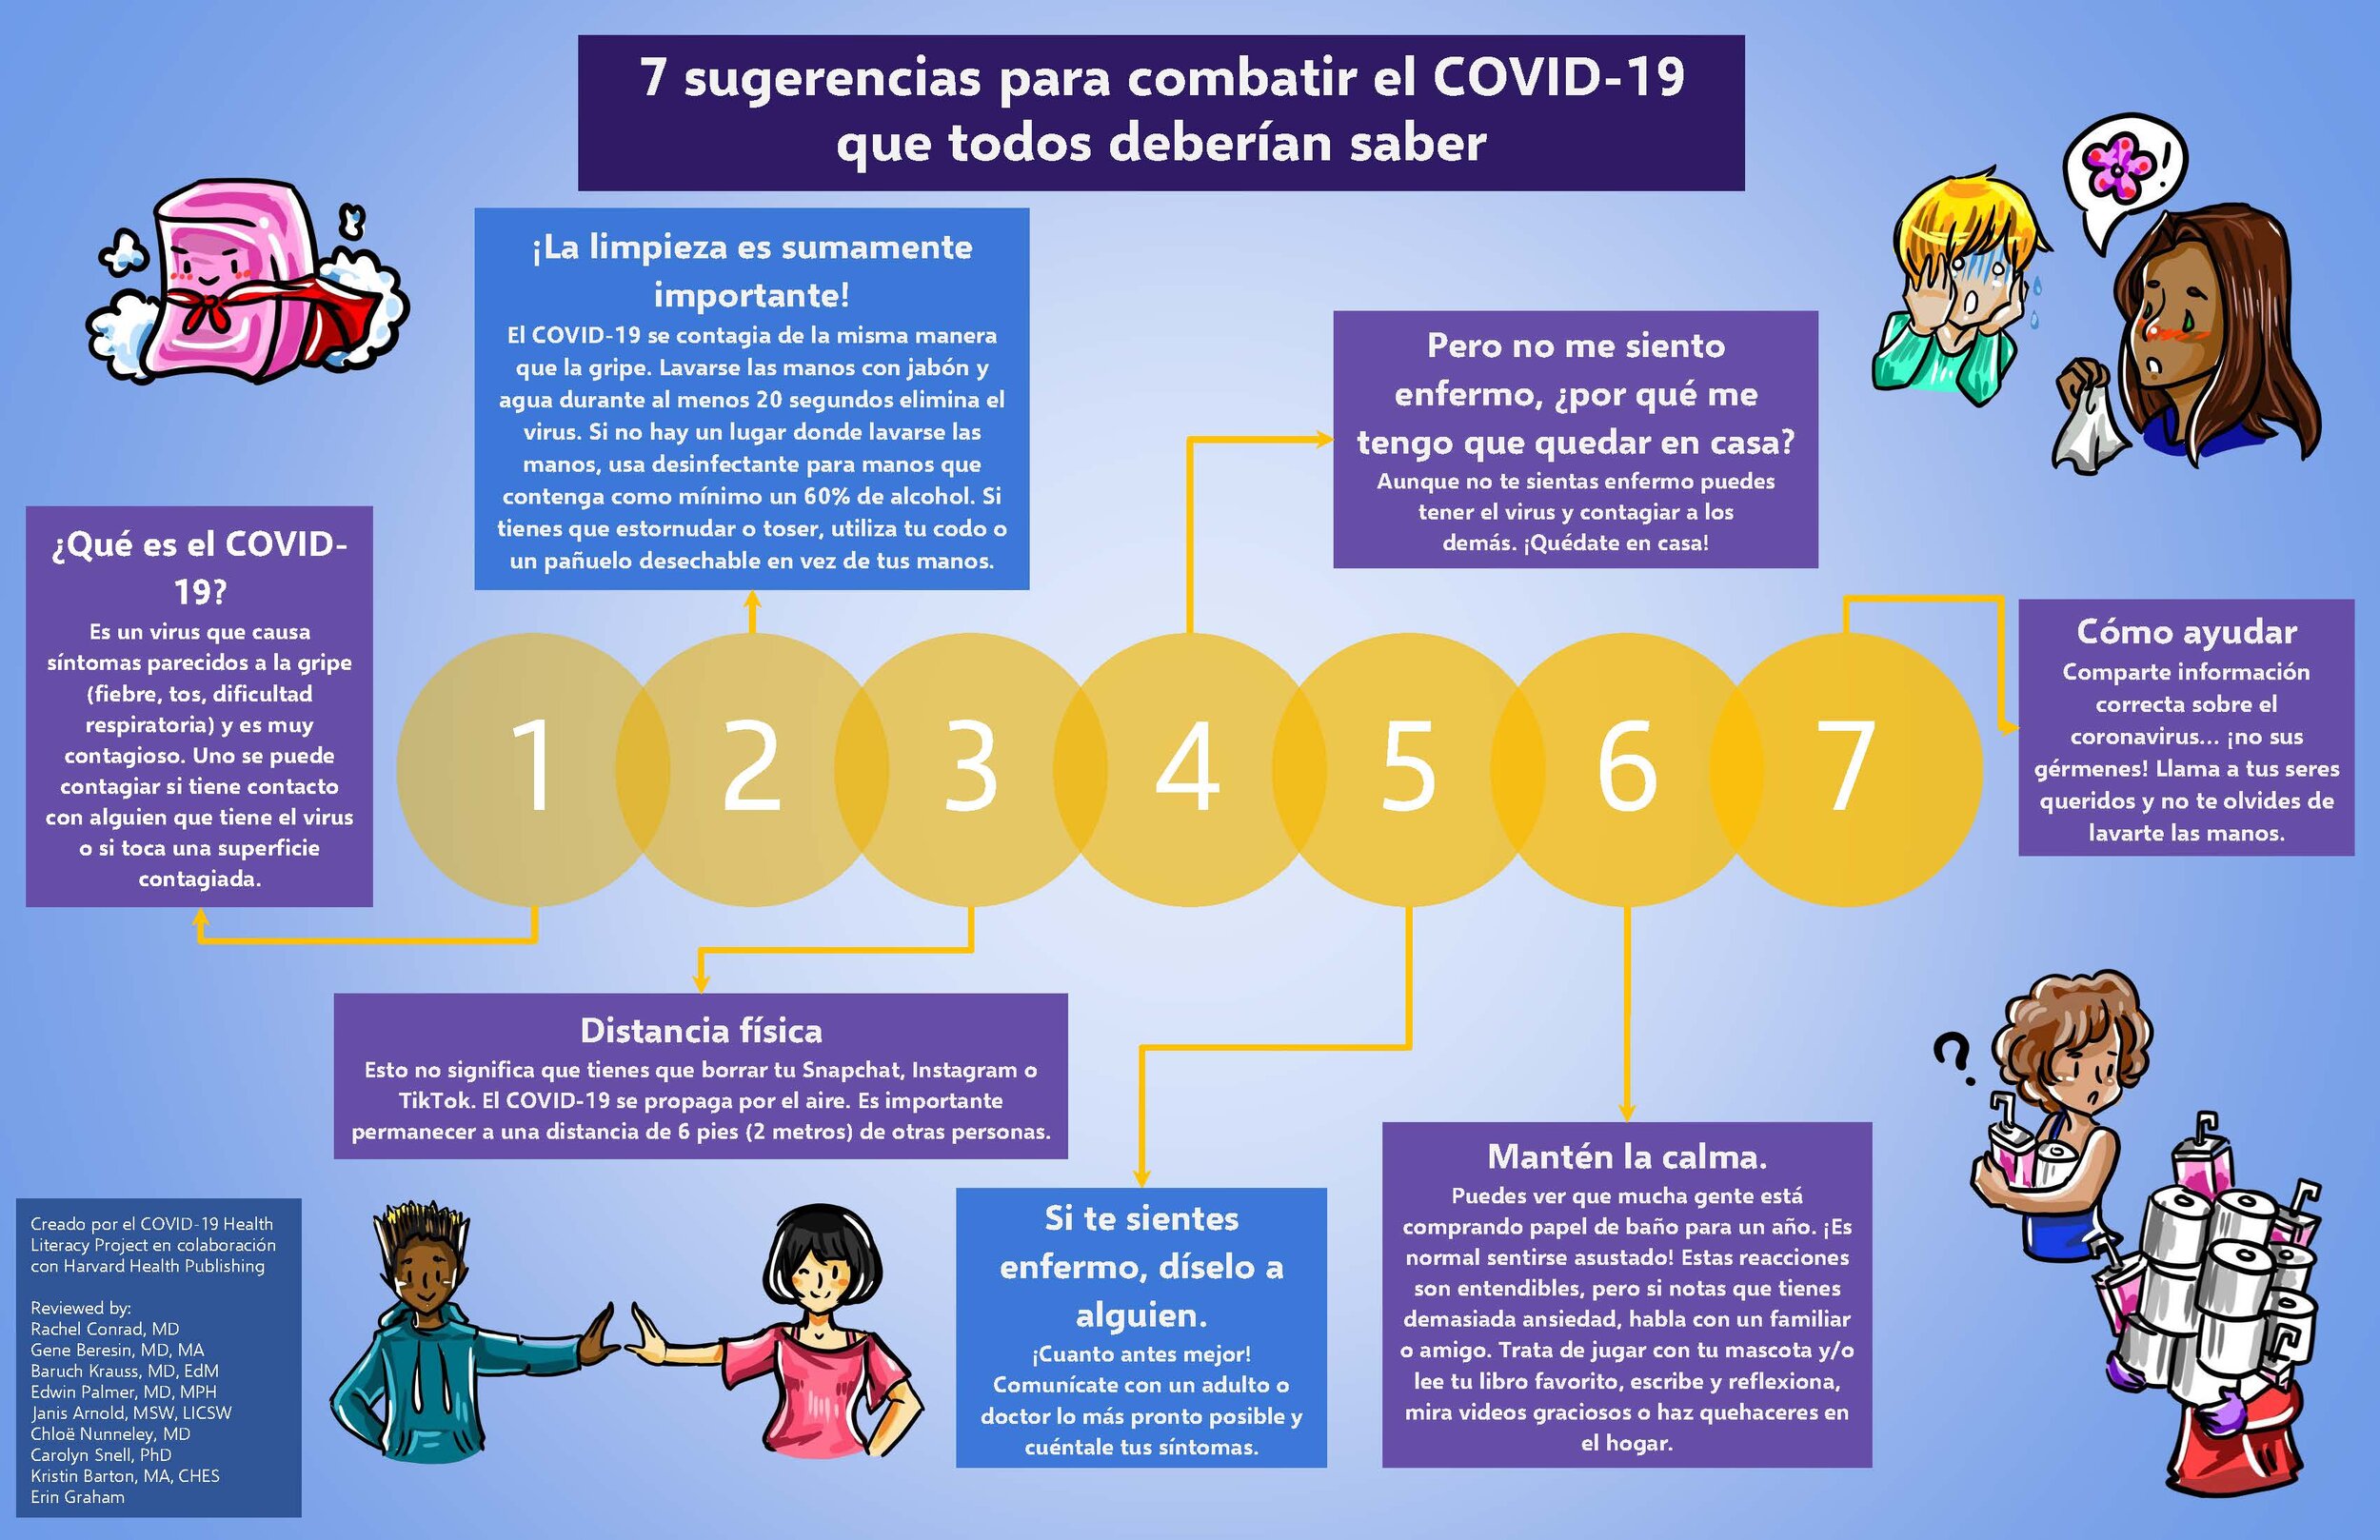 7 sugerencias para combatir el COVID para edad 13 to 18 - 7 suggestions to combat COVID age 13-18-Spanish.jpg